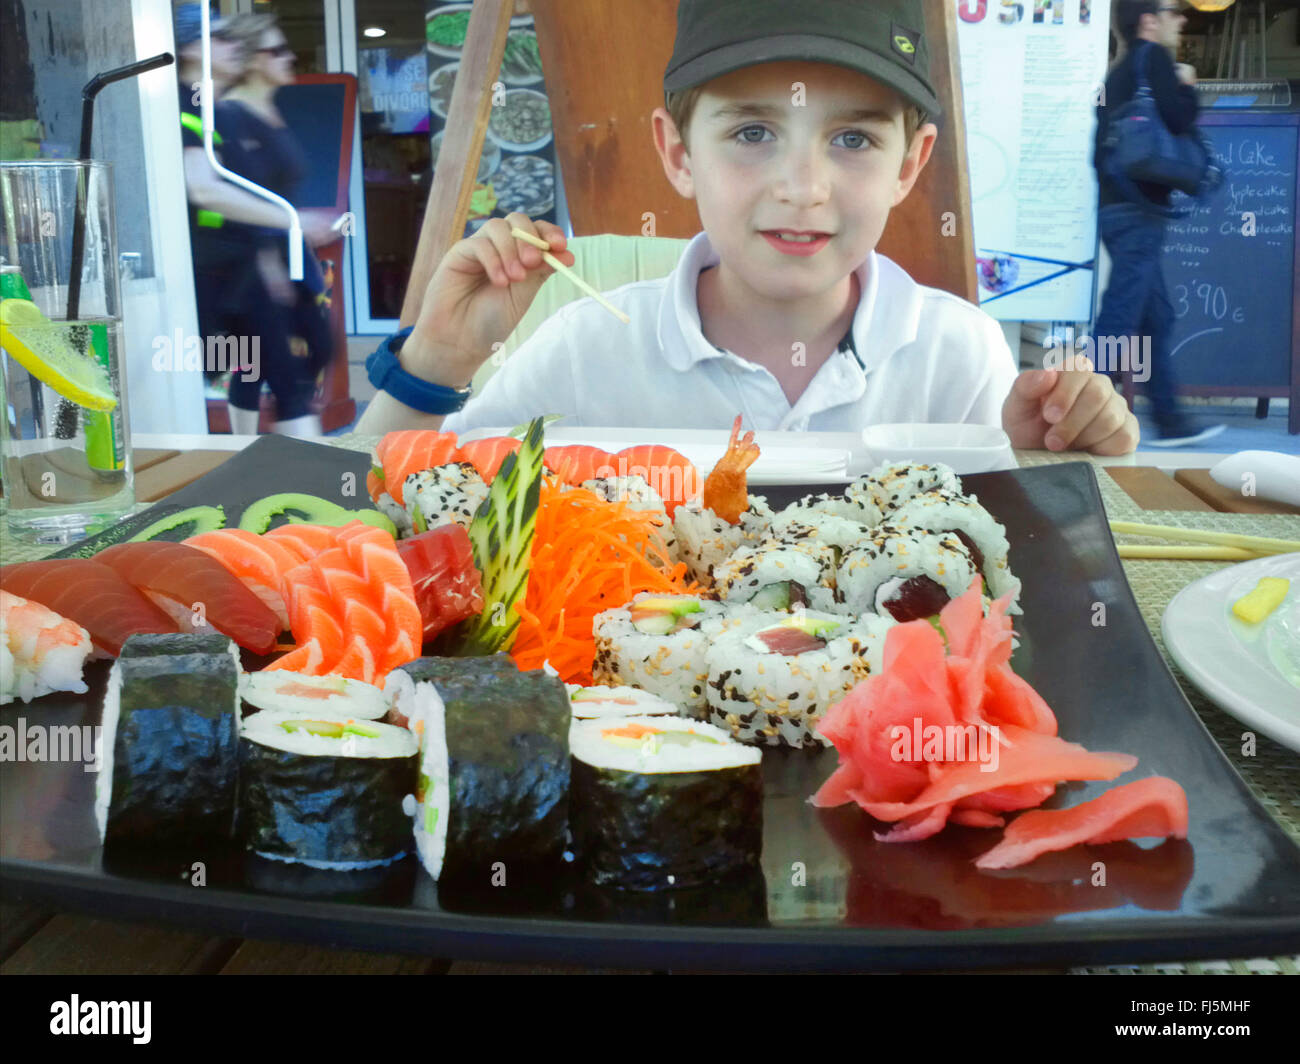 boy eating sushi in a sidewalk restaurant Stock Photo